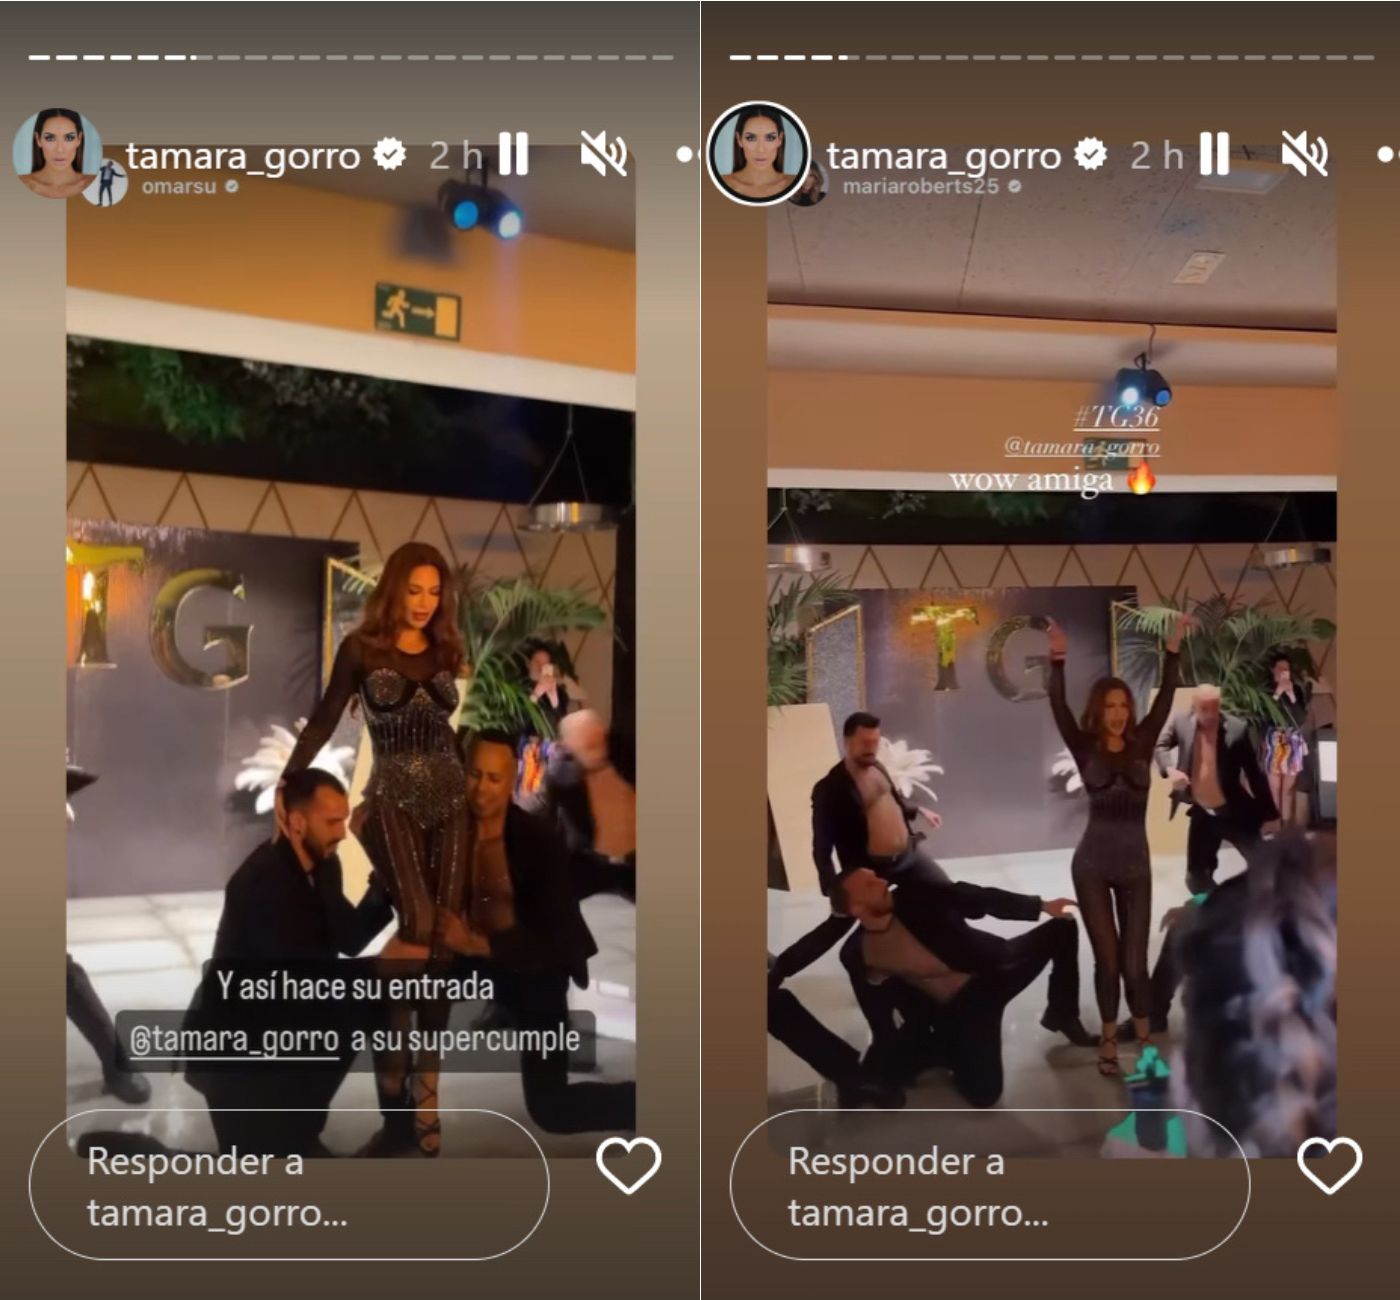 Tamara Gorro se ha convertido en Chanel durante el inicio de la noche (Instagram)